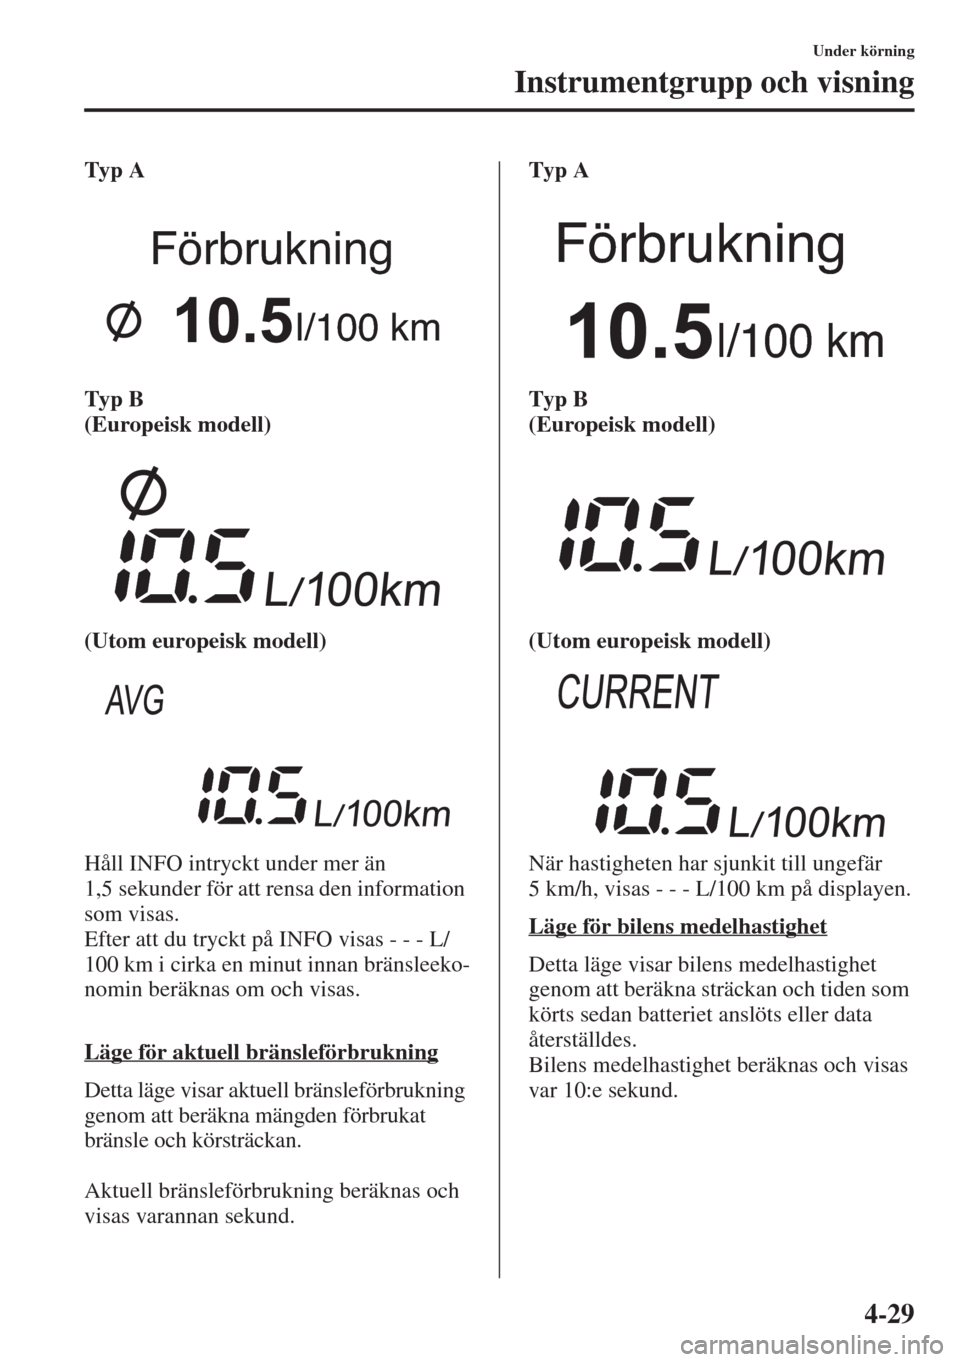 MAZDA MODEL CX-5 2015  Ägarmanual (in Swedish) 4-29
Under körning
Instrumentgrupp och visning
Typ A
Typ B 
(Europeisk modell)
(Utom europeisk modell)
Håll INFO intryckt under mer än 
1,5 sekunder för att rensa den information 
som visas.
Efter